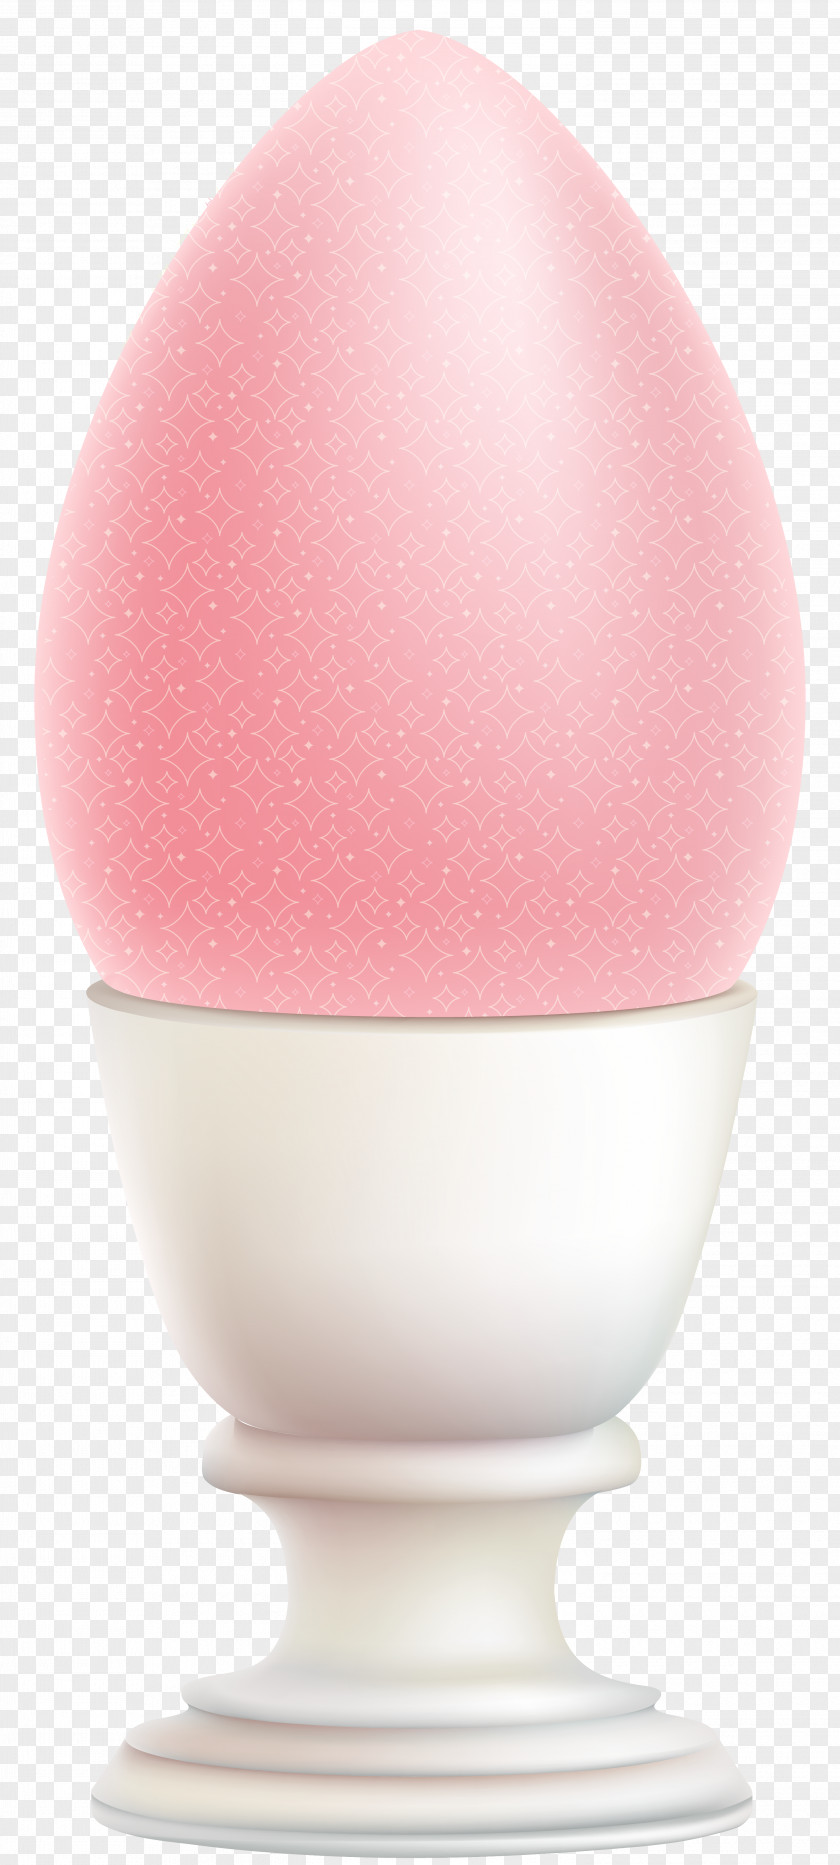 Easter Egg Decoration Transparent Clip Art Image Product Design PNG